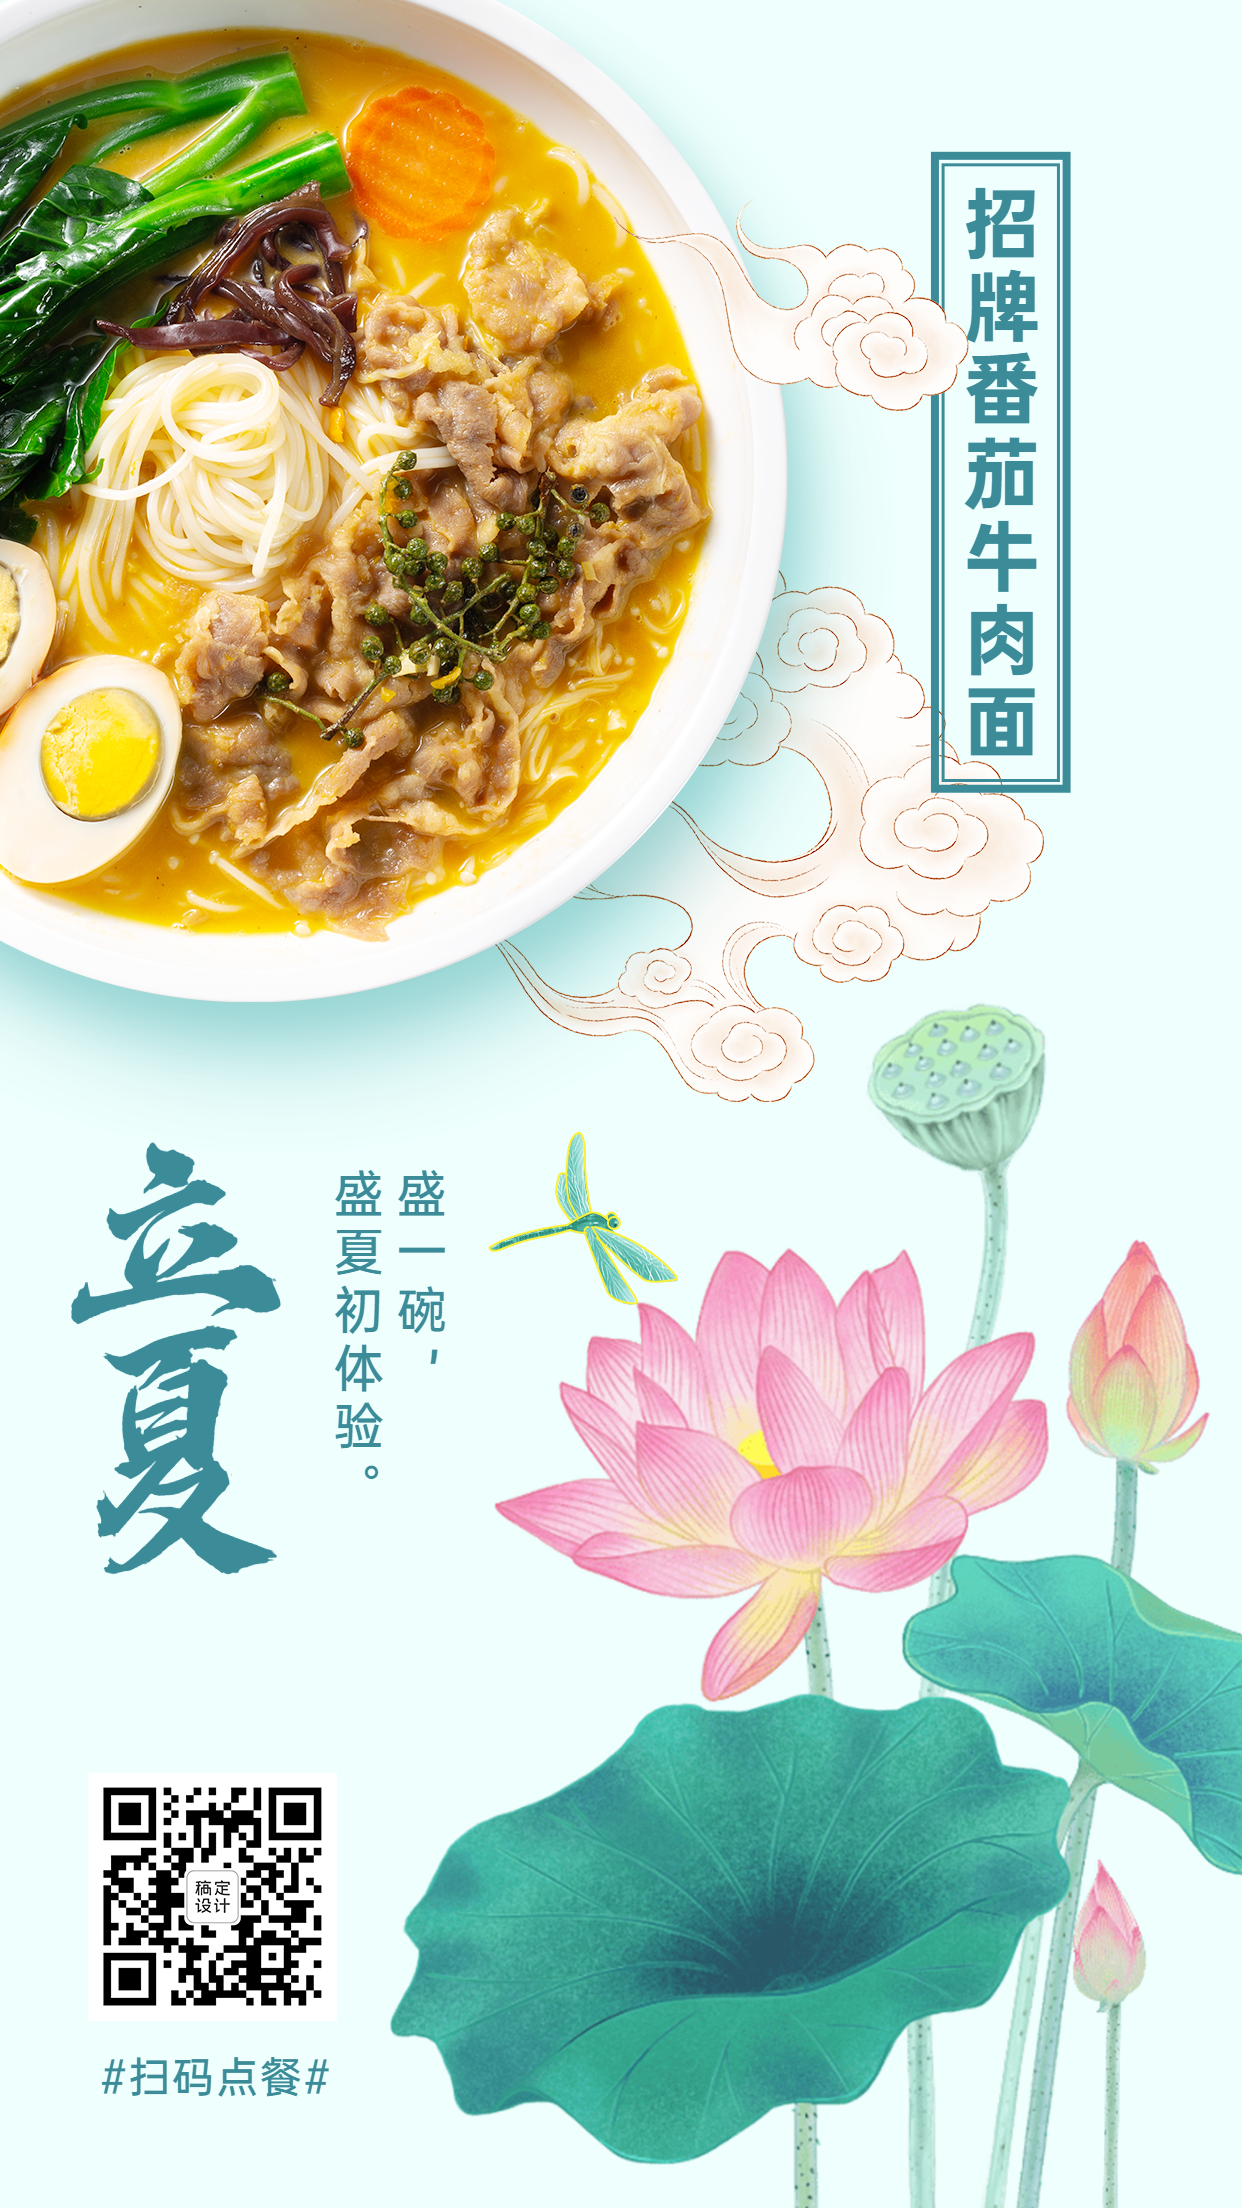 立夏中餐汤面类菜品展示手机海报